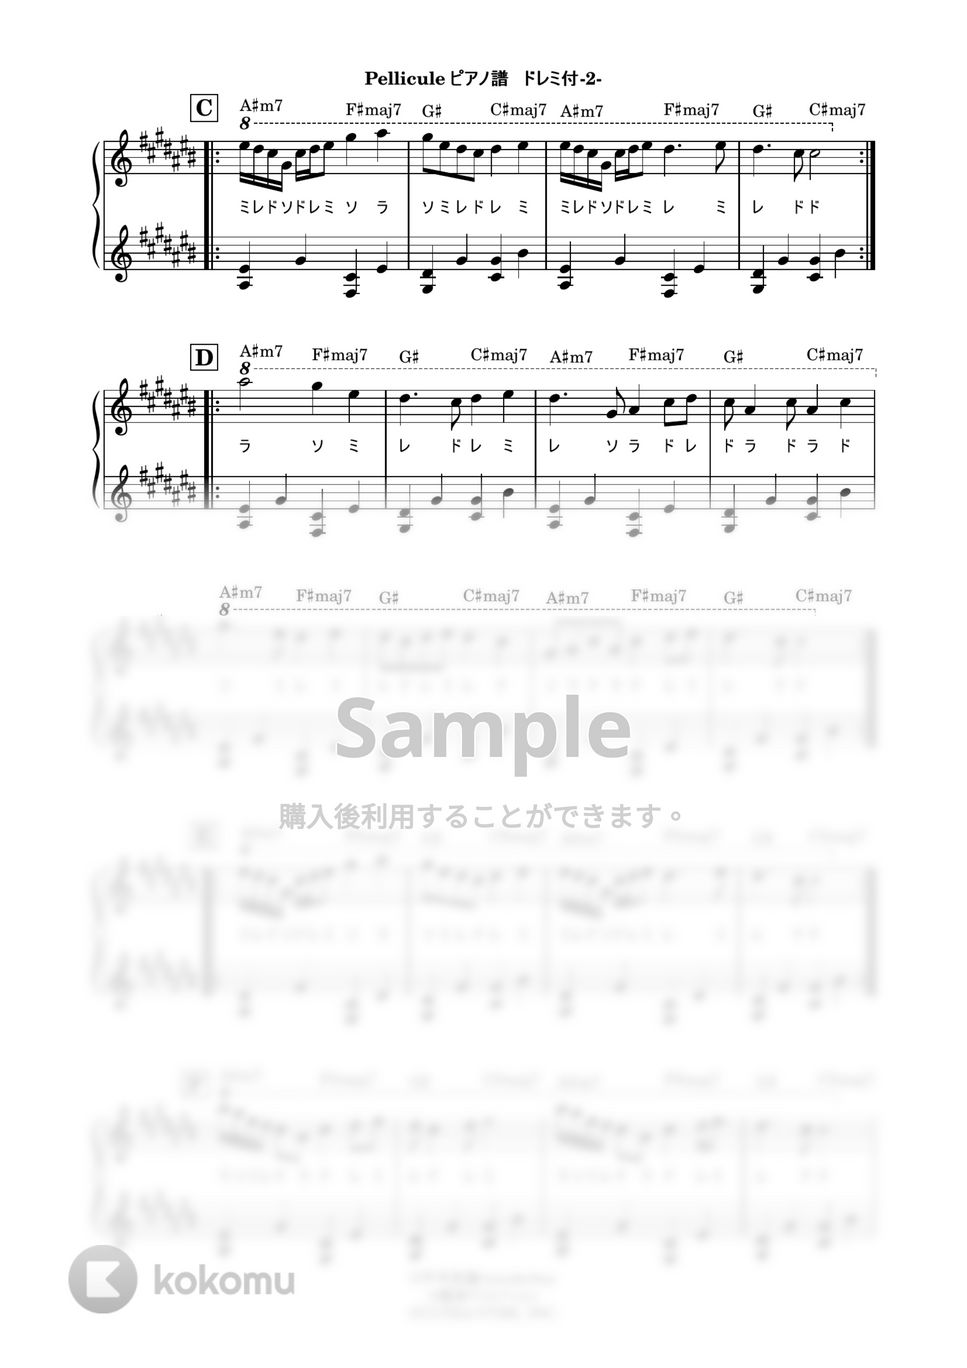 不可思議/wonderboy - Pellicule (ドレミ付ピアノ譜) by 鈴木建作